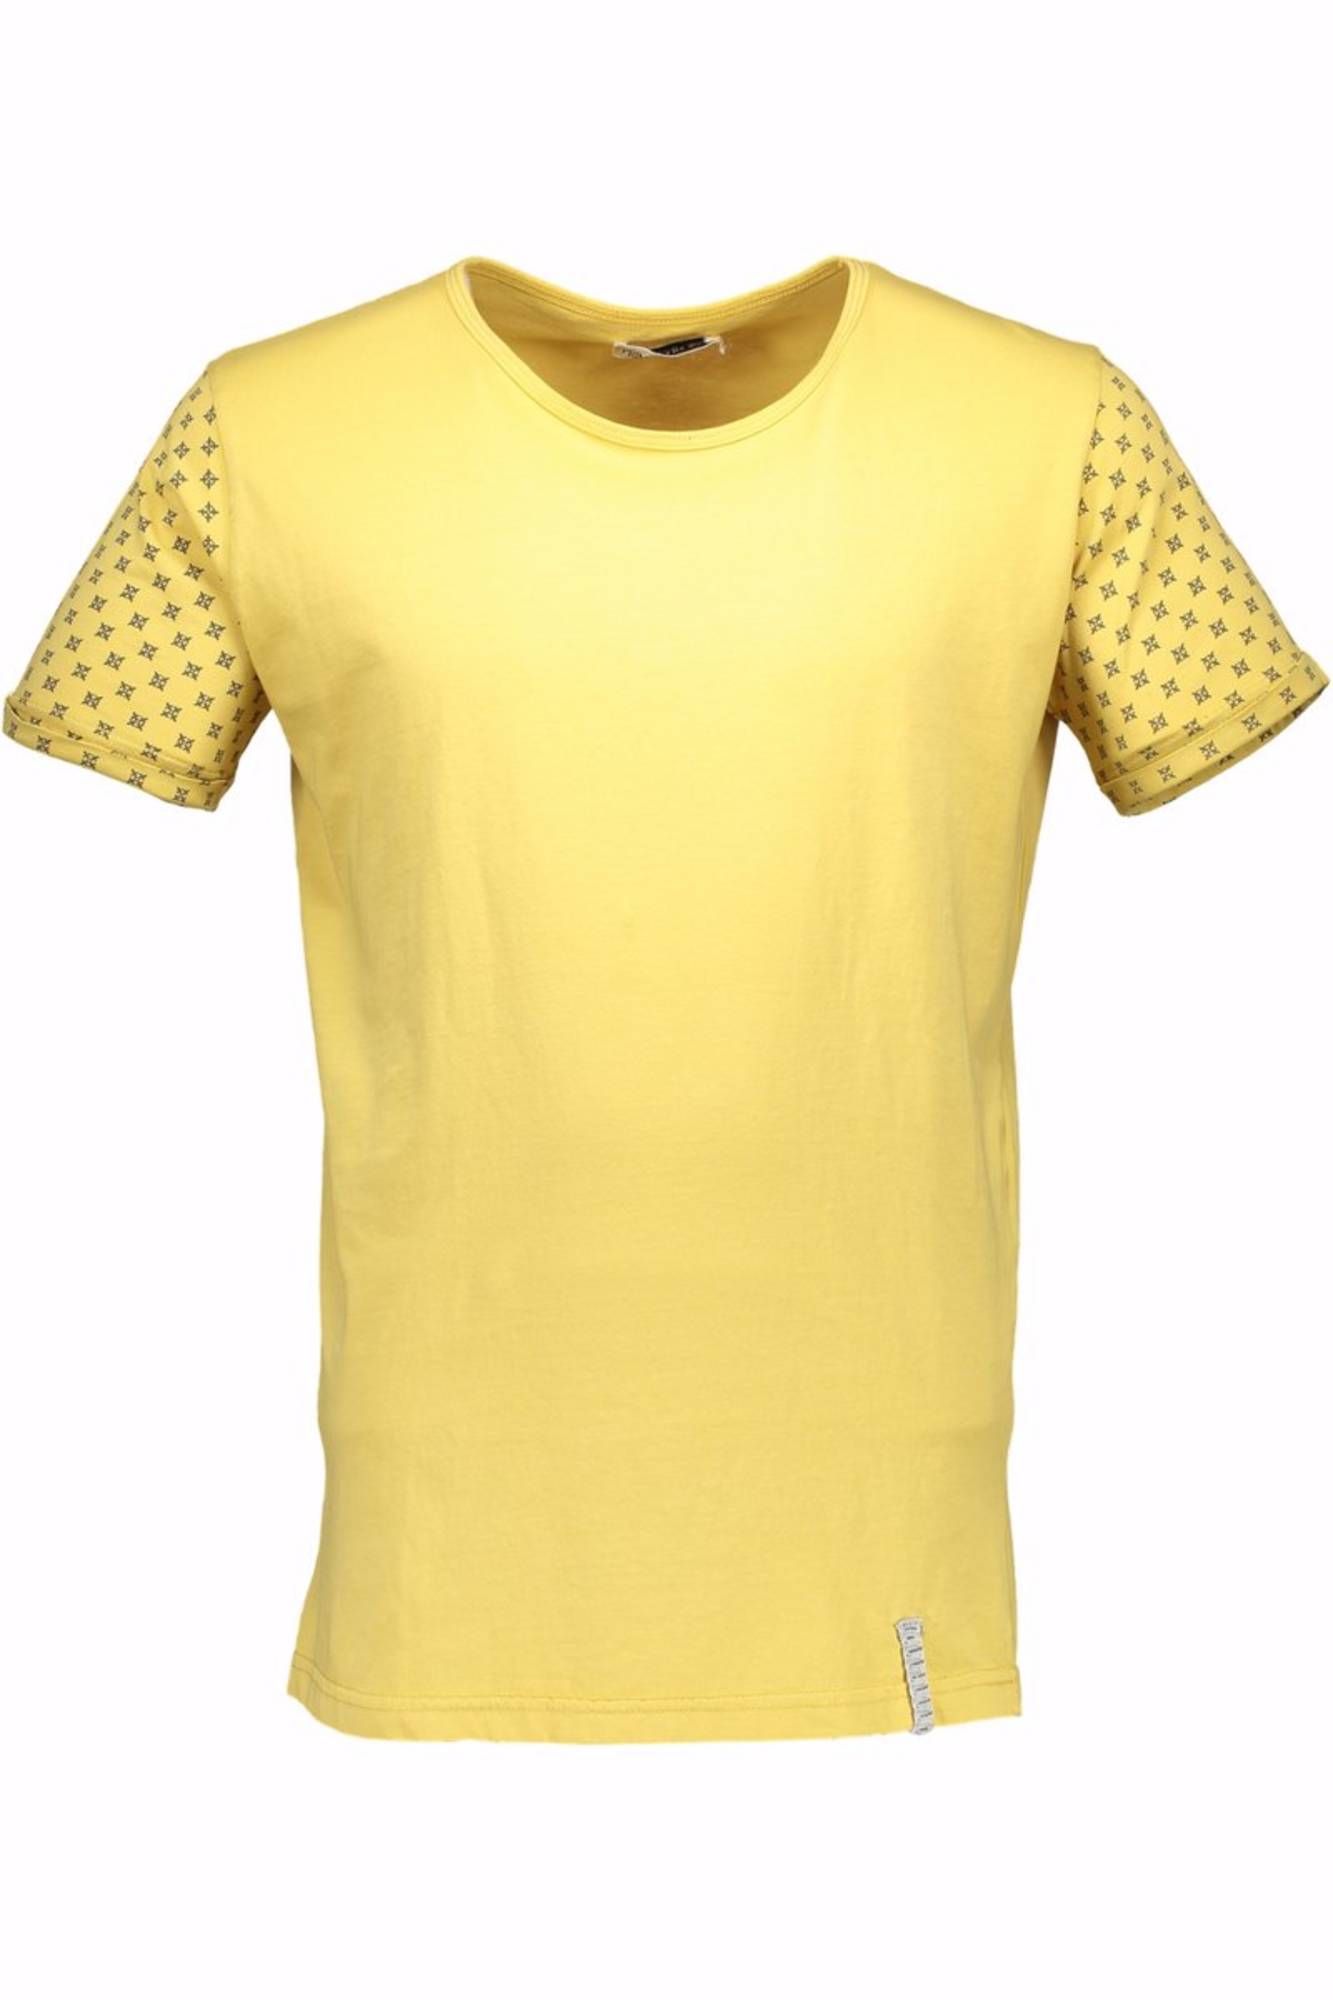 Tričko PRIMO EMPORIO tričko s krátkým rukávem GIALLO